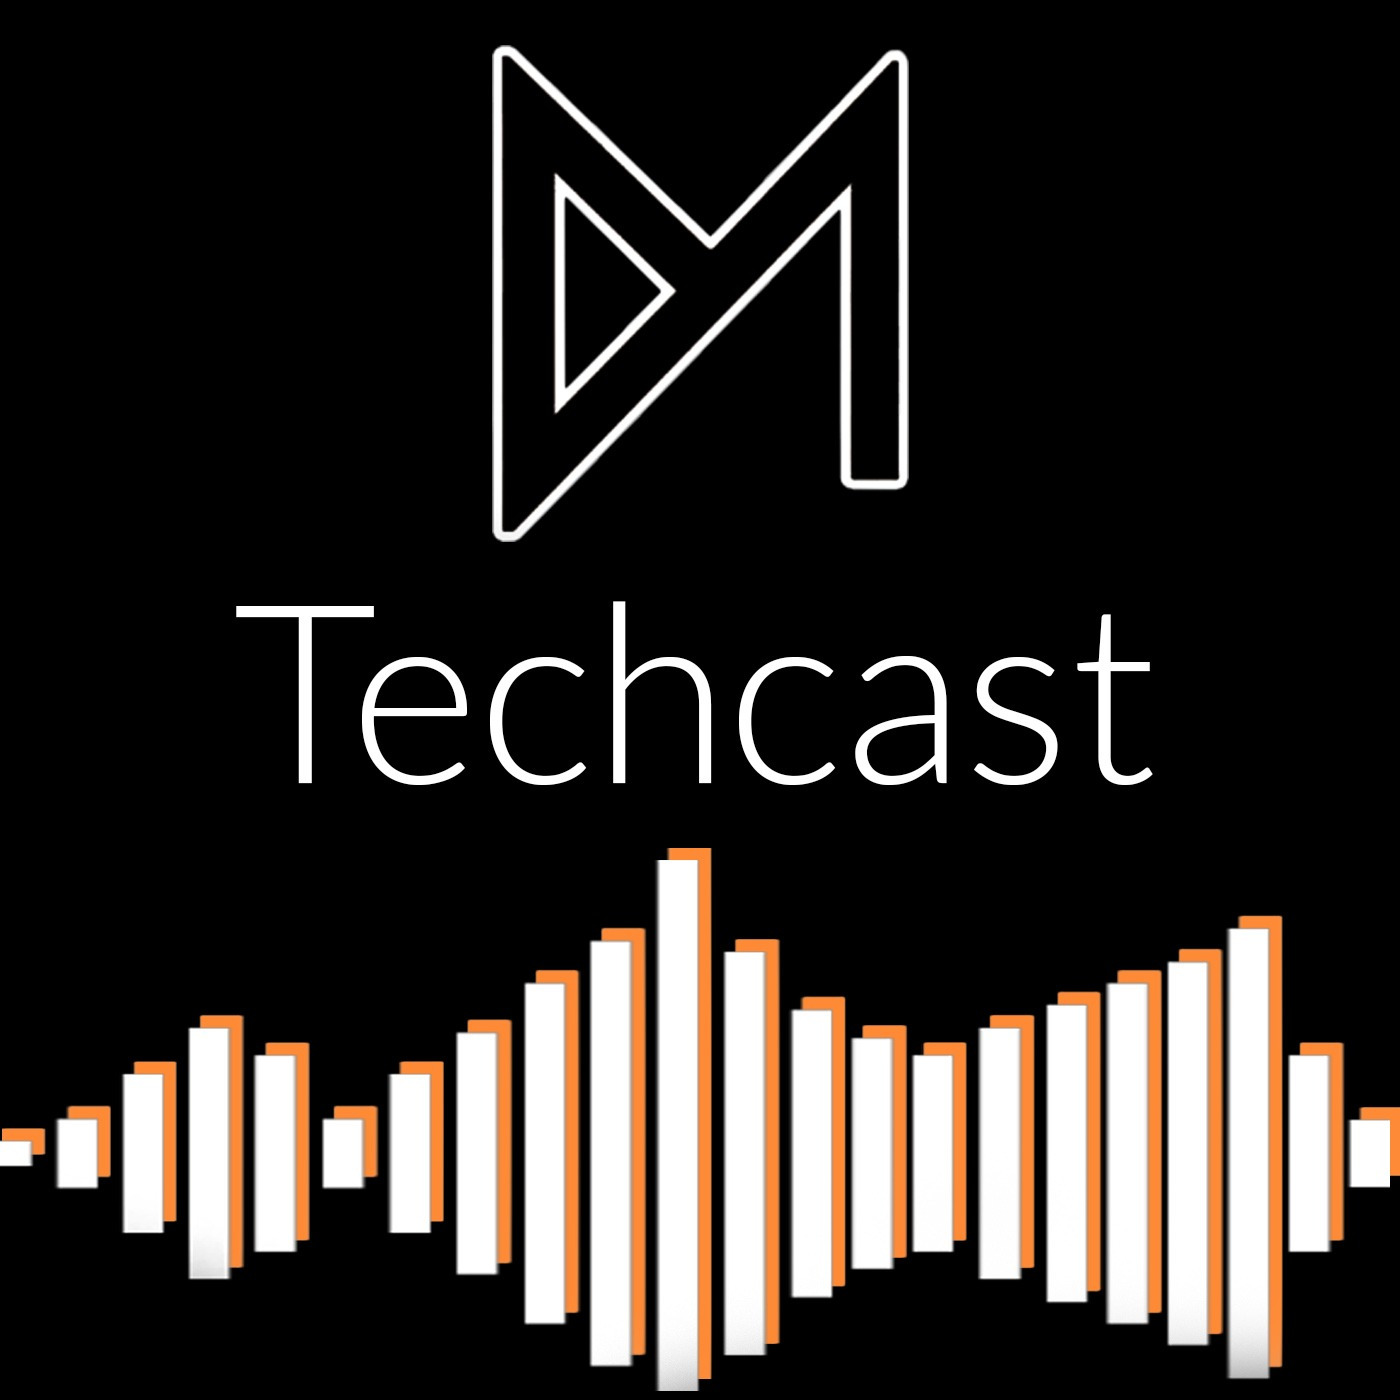 EP. 9 - MKVD TechCast Q&A